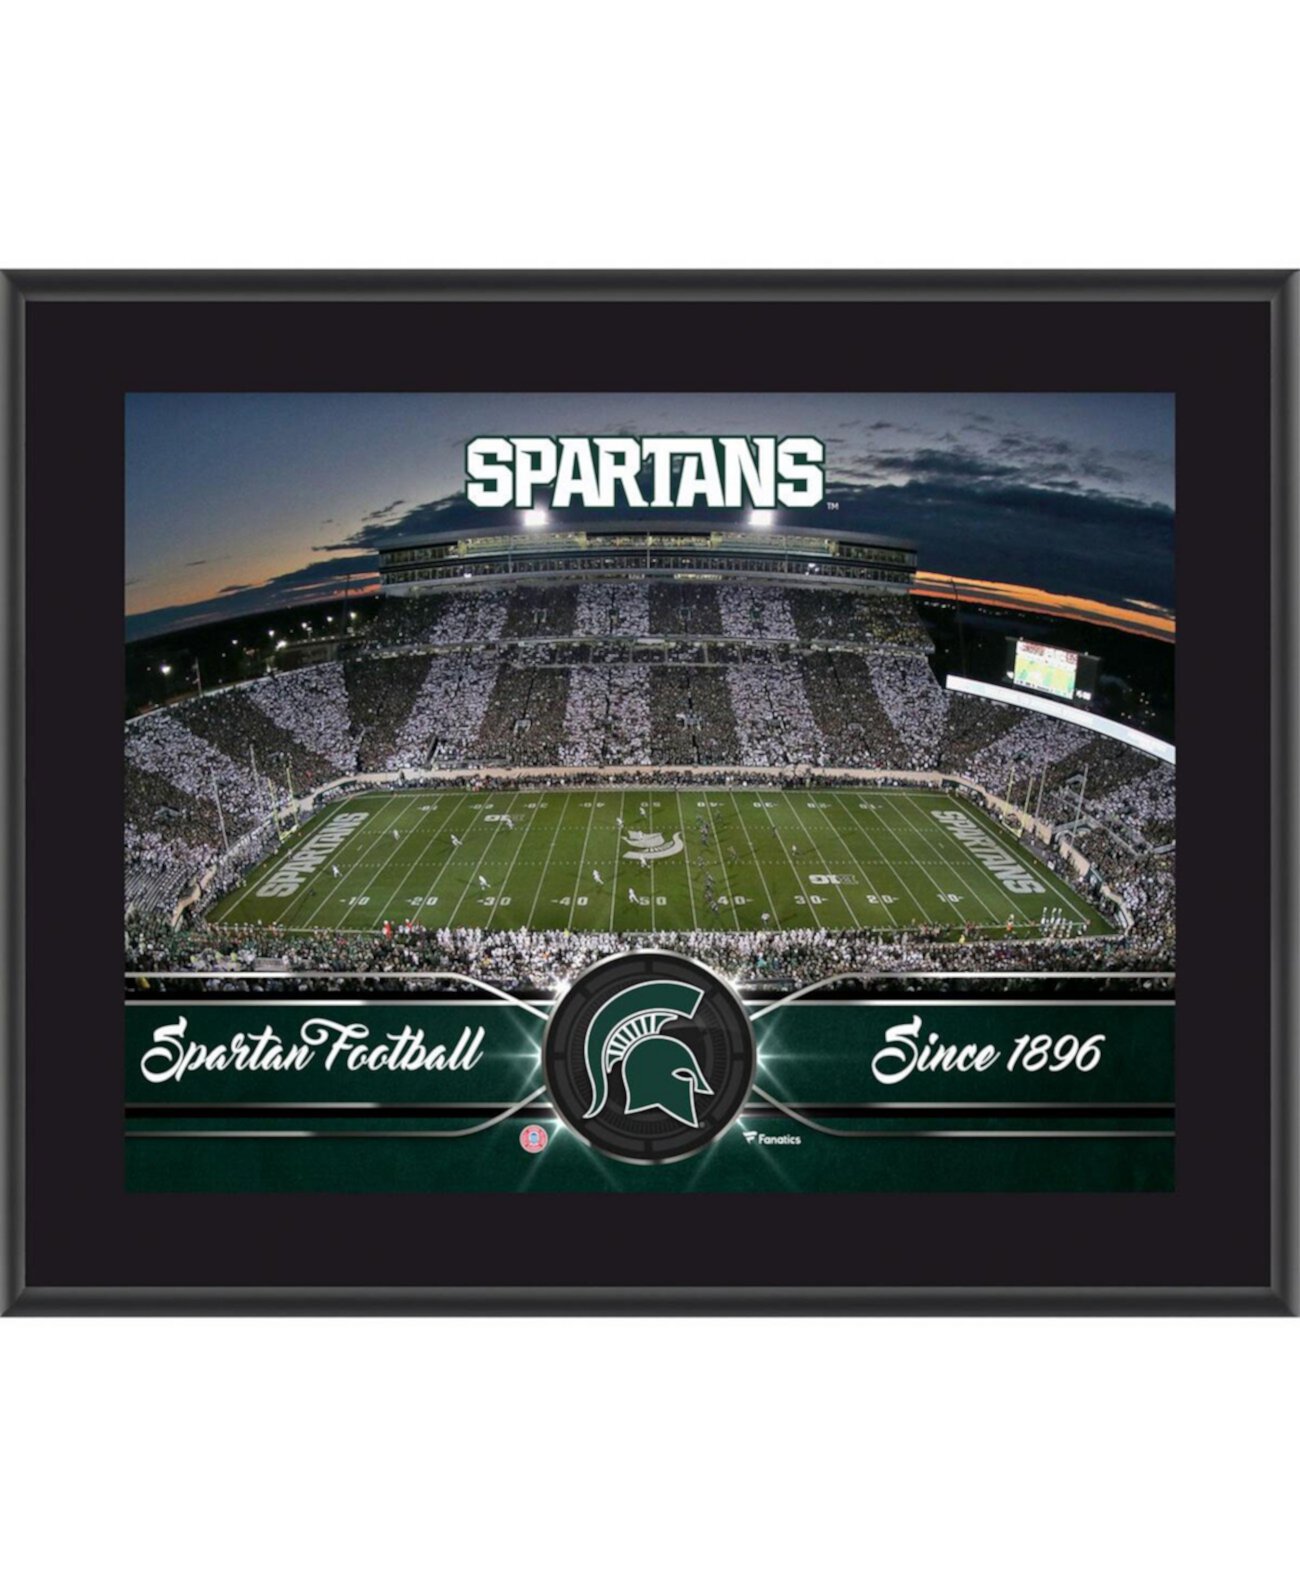 Сублимированная табличка команды Spartans штата Мичиган размером 10,5 x 13 дюймов Fanatics Authentic